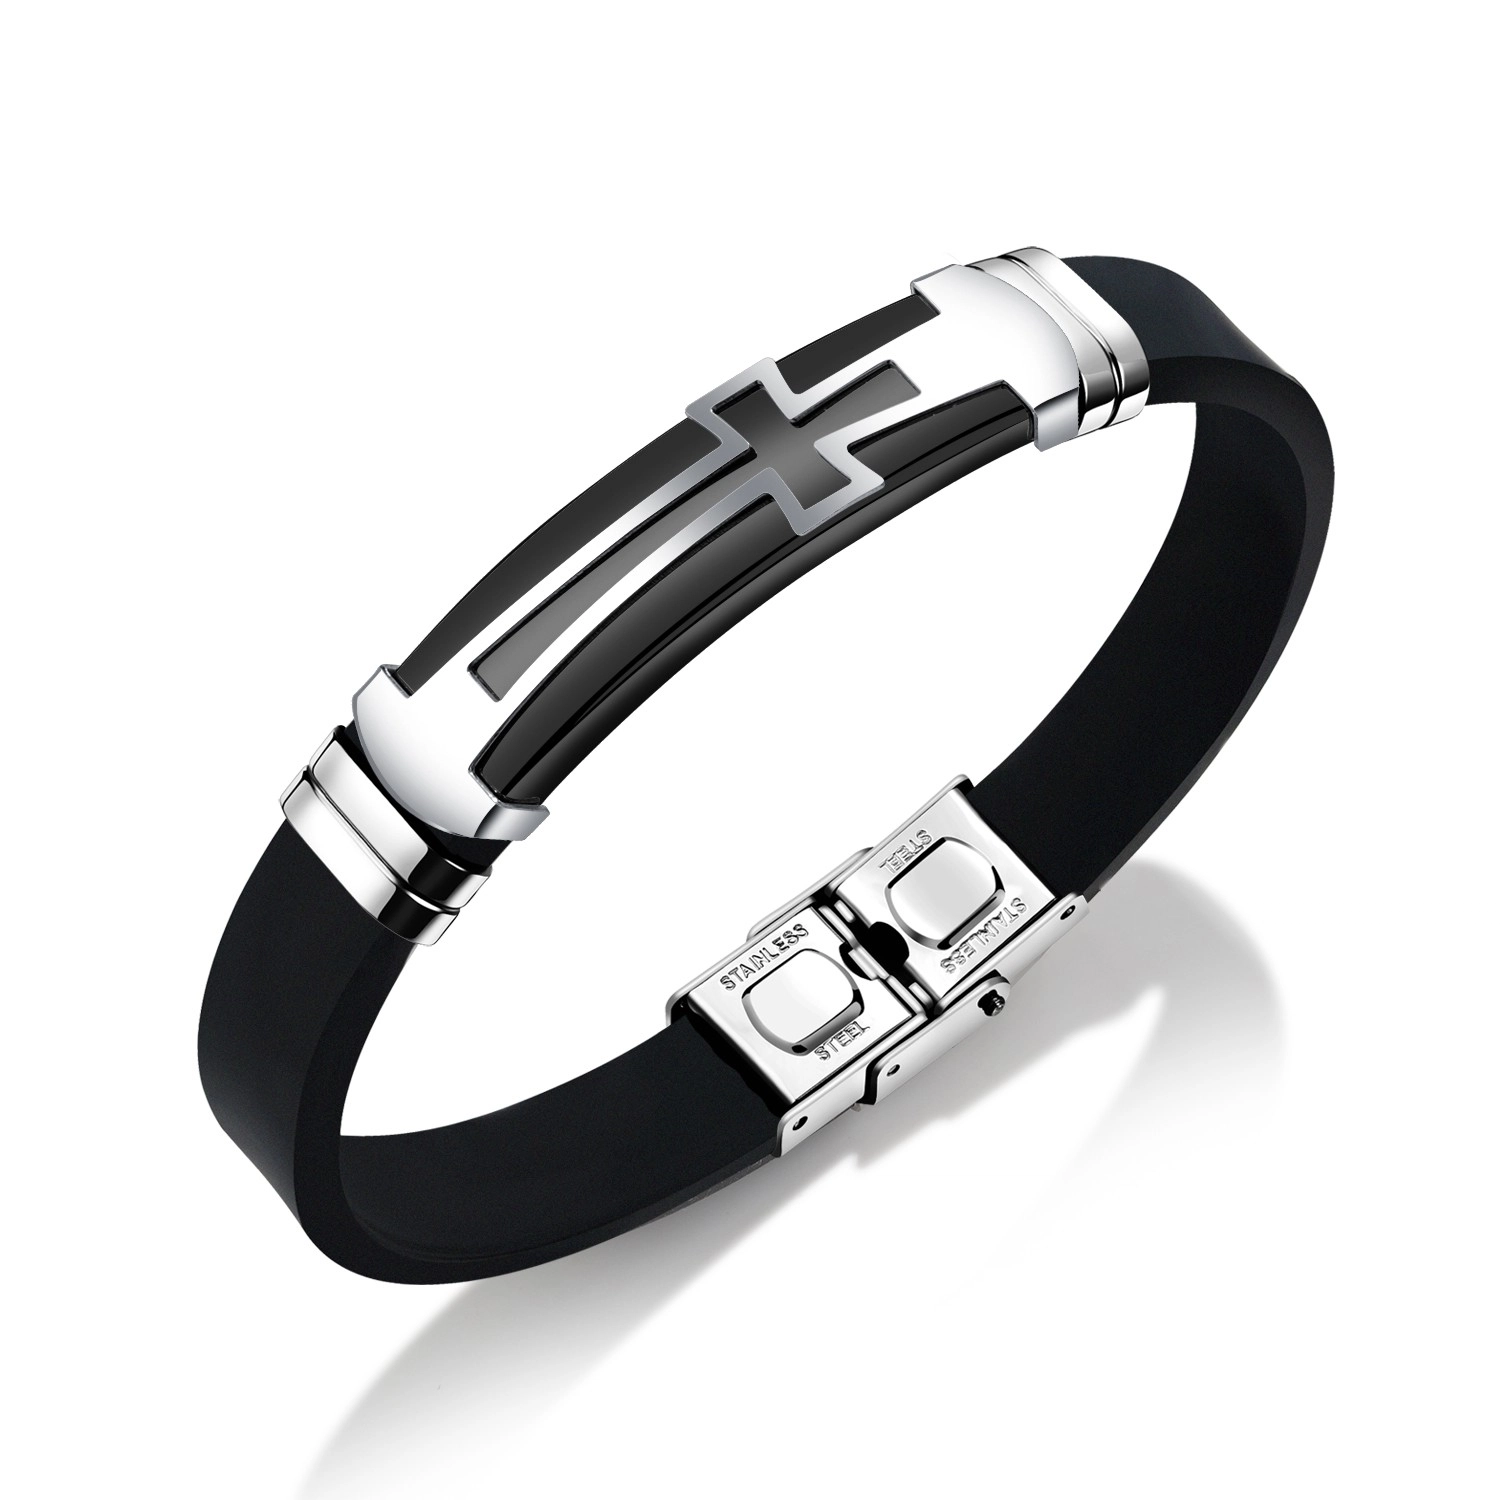 E-shop Šperky Eshop - Oceľovo-gumený náramok, čierny remienok, lesklá známka s veľkým krížom SP31.31